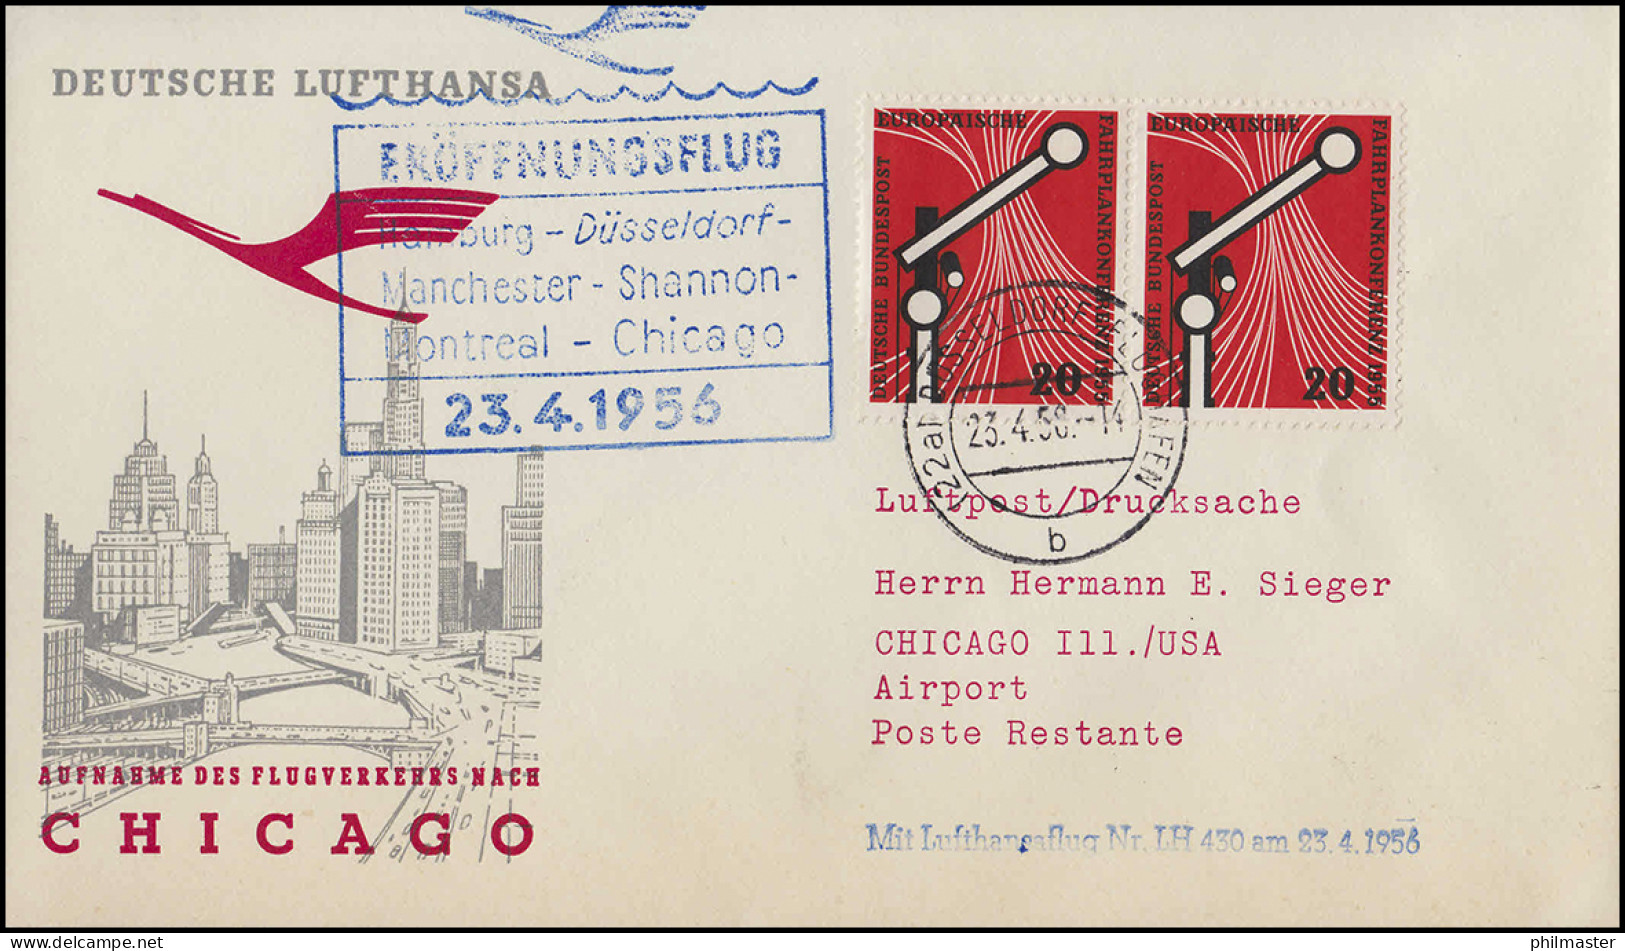 Eröffnungsflug Lufthansa LH 430 Chicago, Düsseldorf 23.4.1956 / Chicago 24.5.56 - First Flight Covers